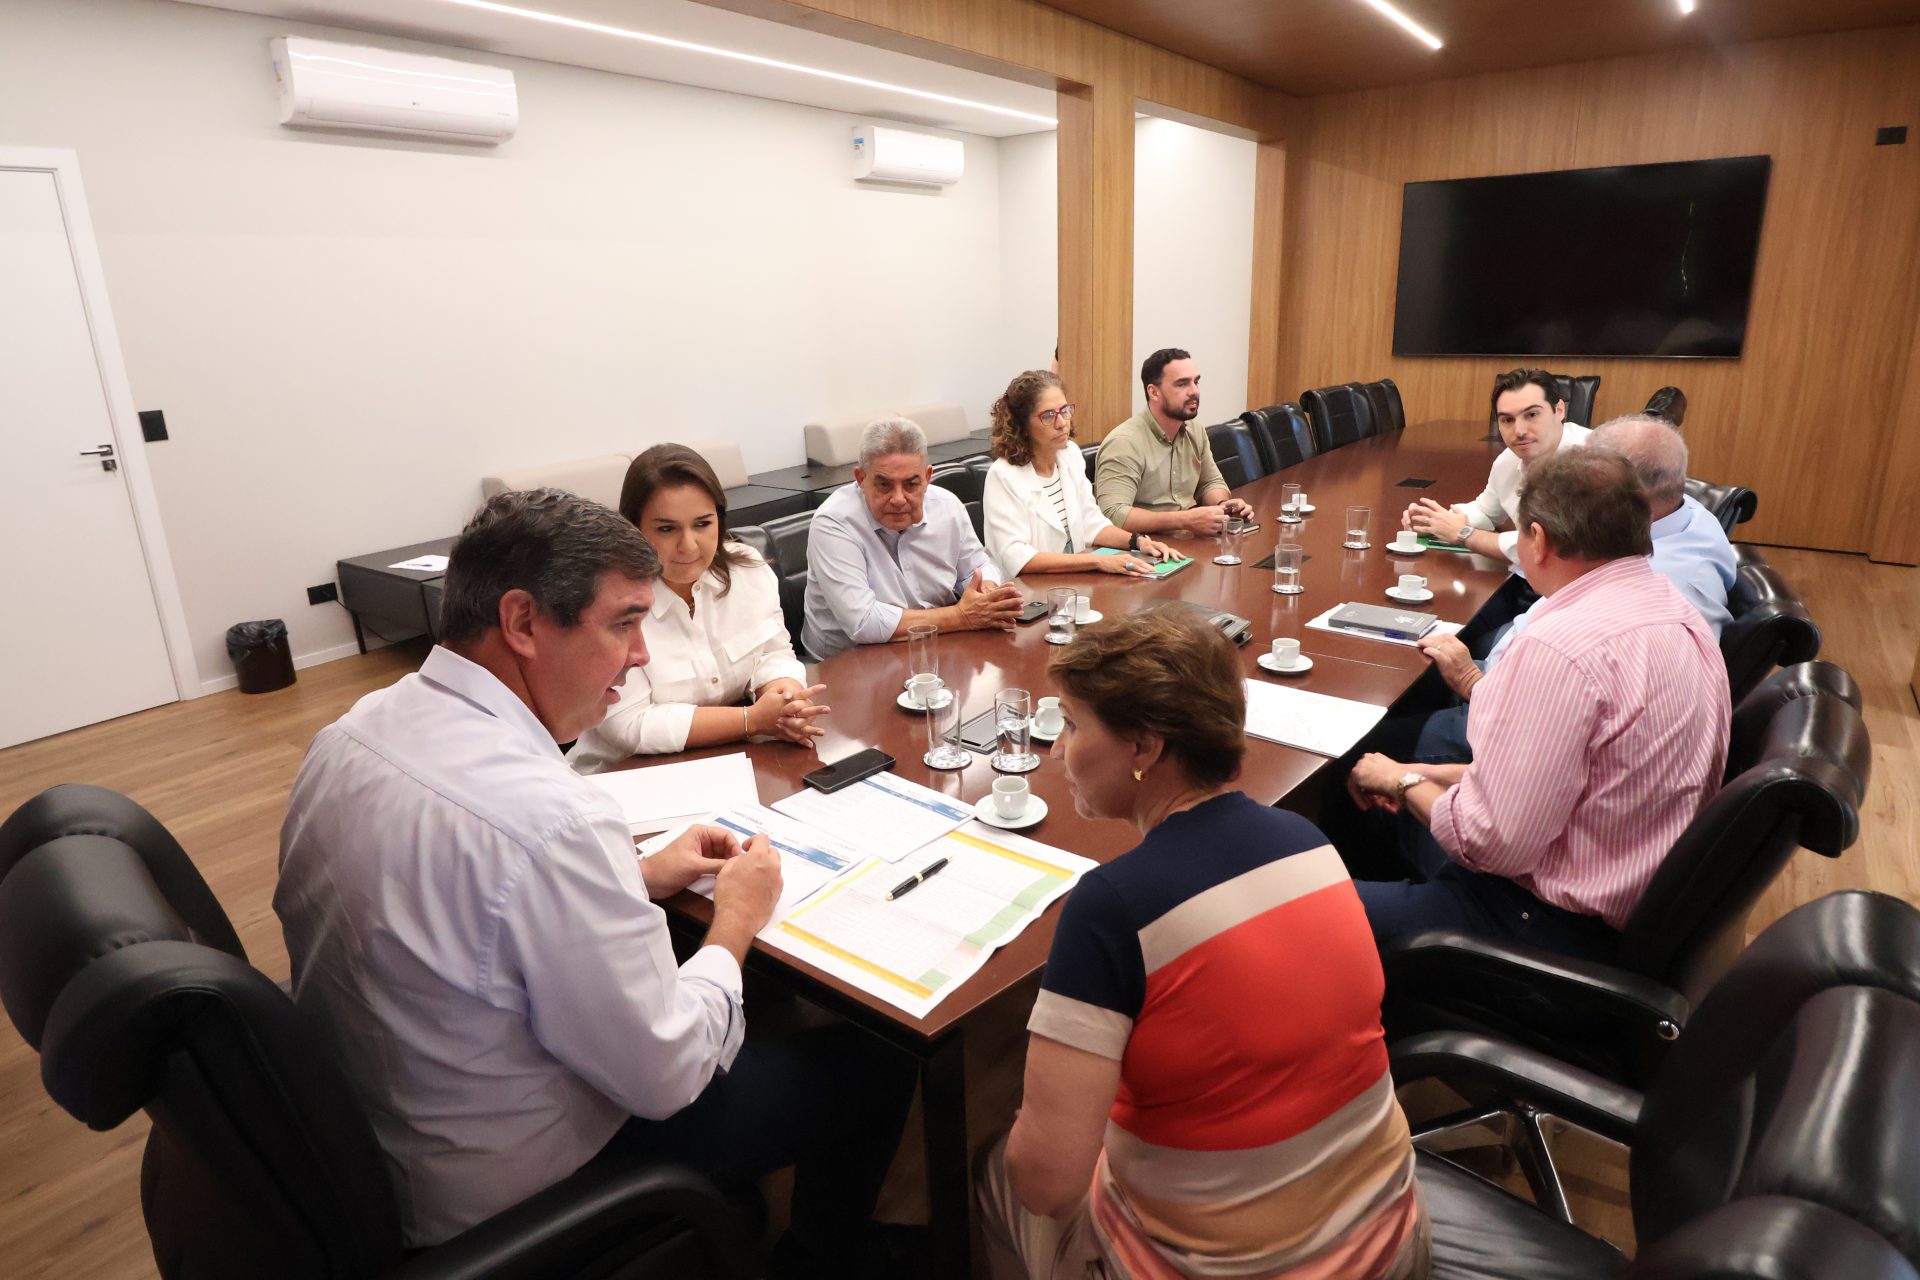 Demandas e projetos na Capital pautam reunião entre município e governo estadual